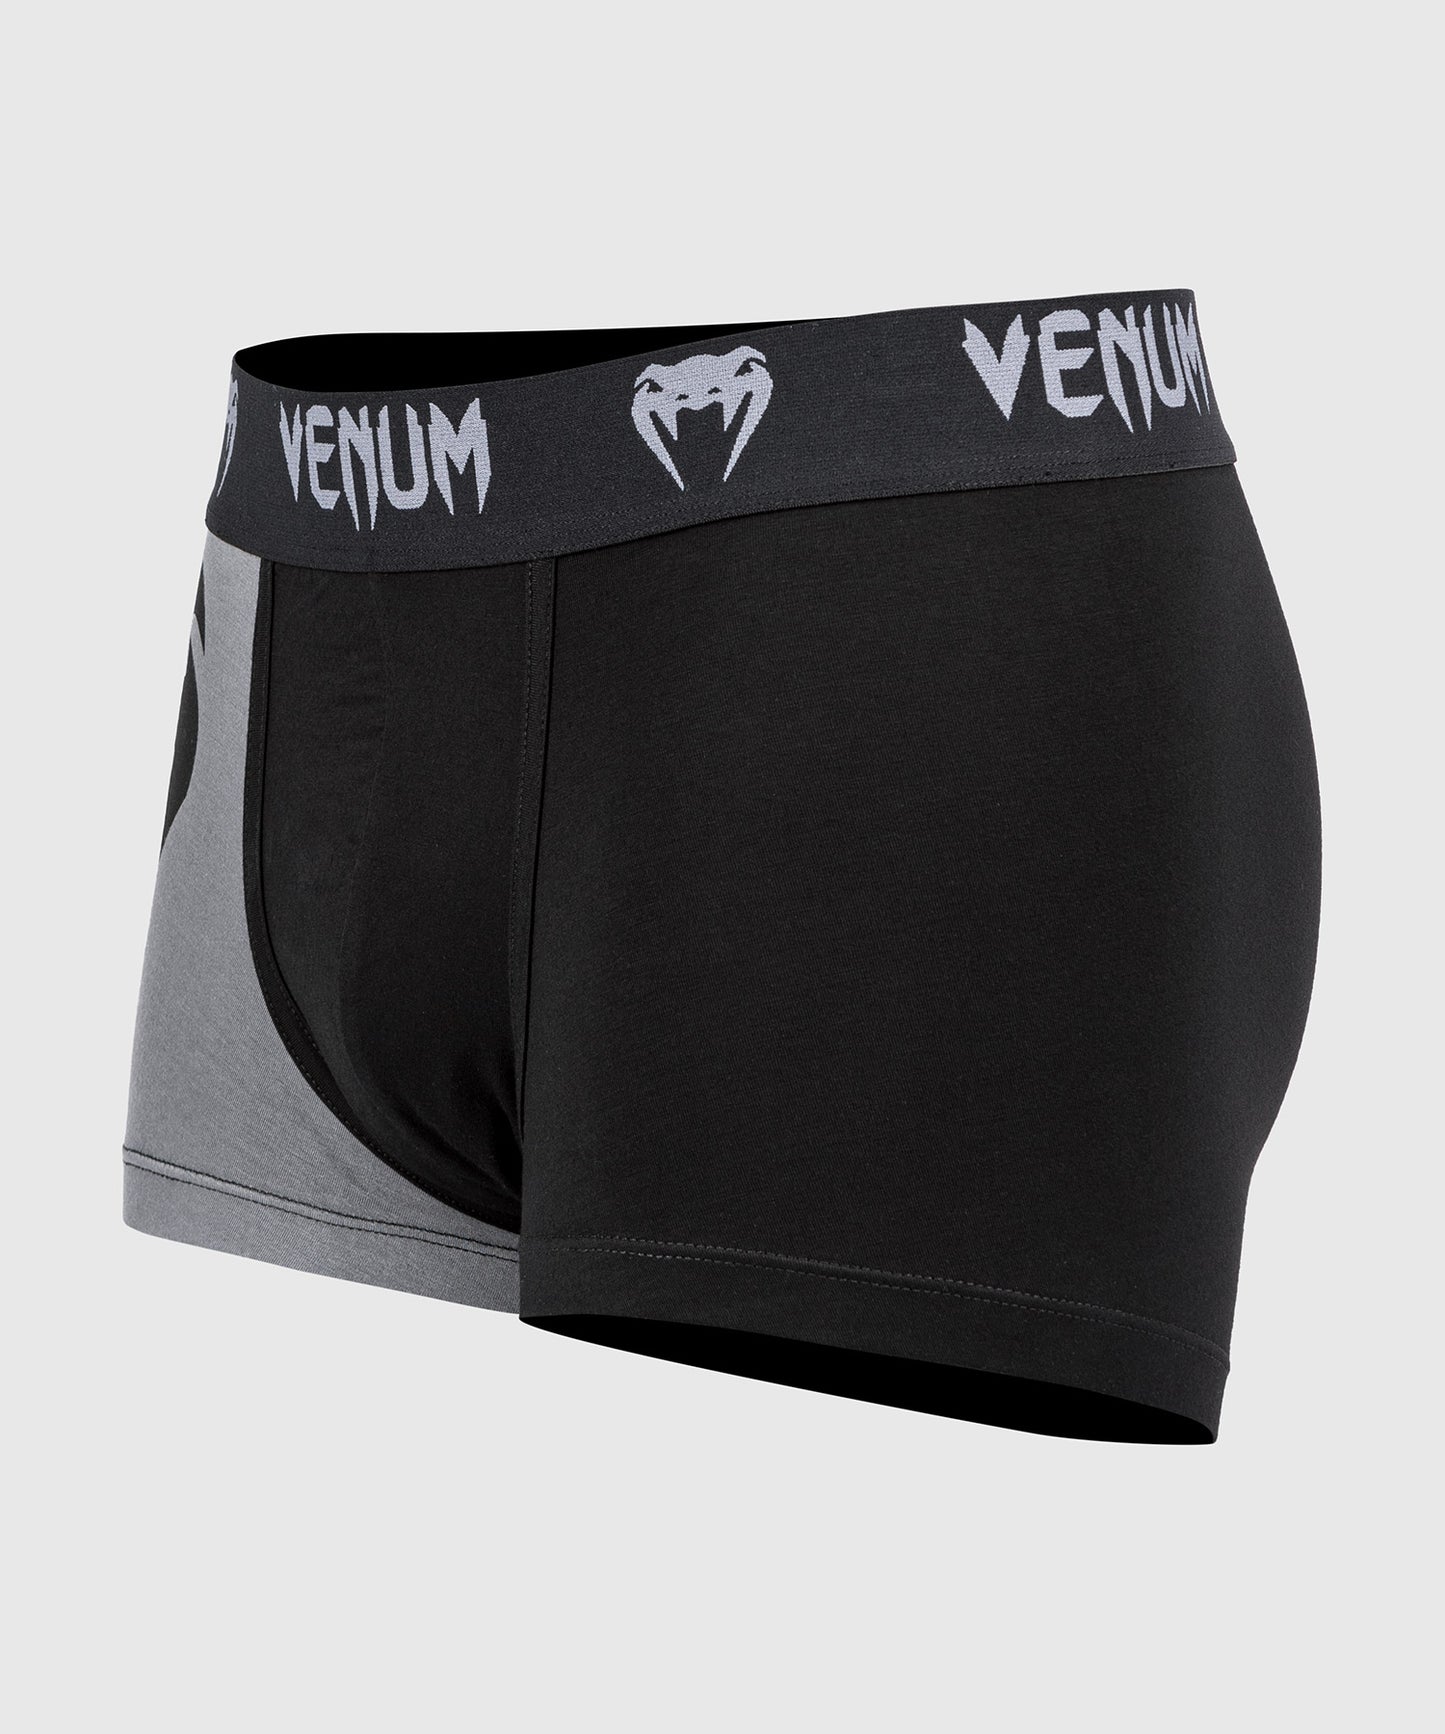 Boxer Venum Giant - Noir/Gris